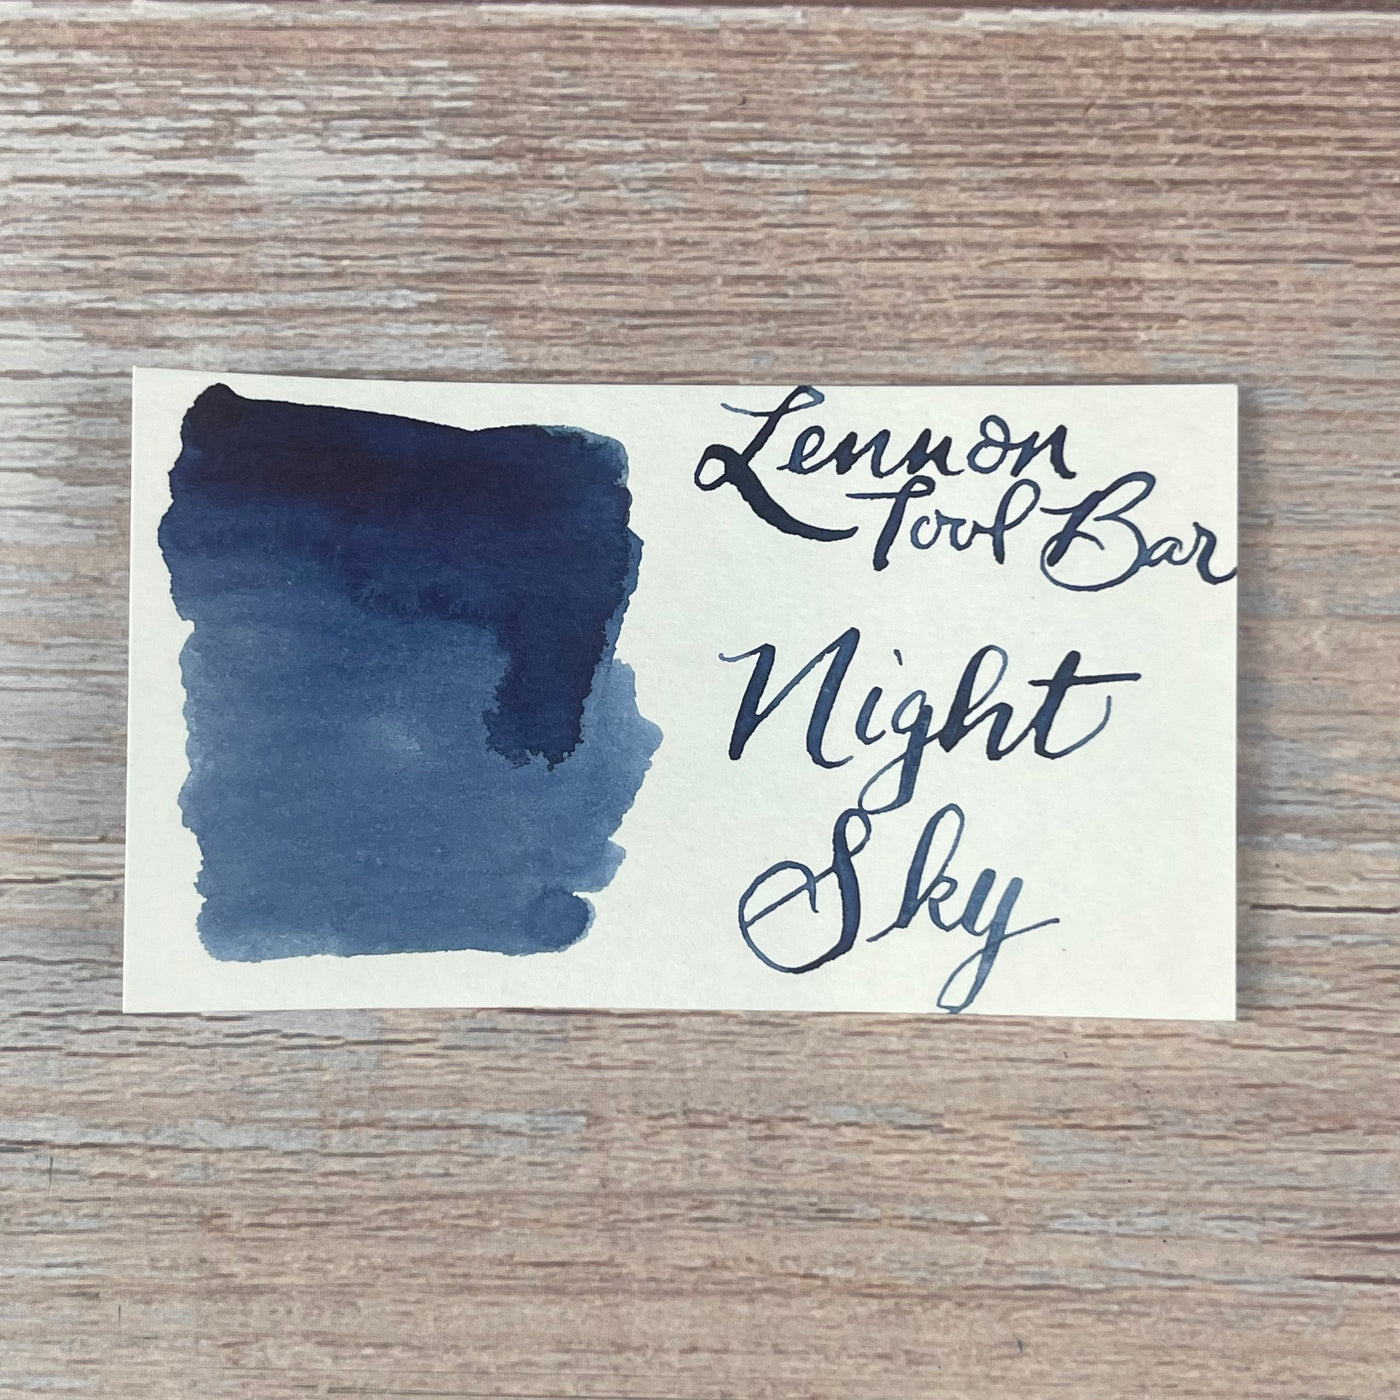 Lennon Tool Bar Night Sky - 30ml Bottled Ink